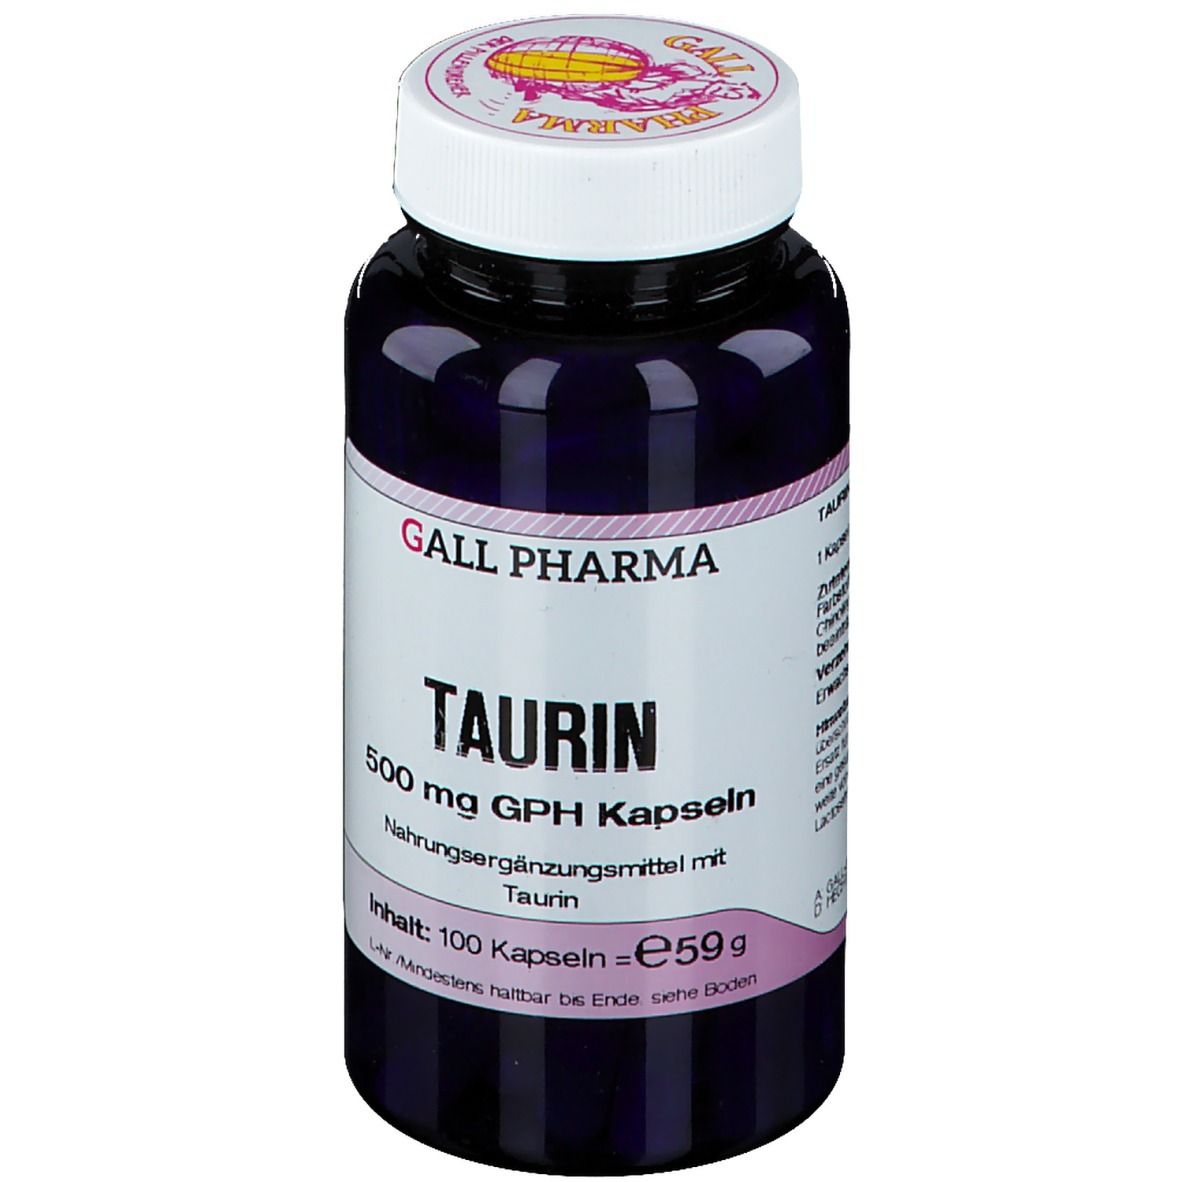 GALL PHARMA Taurin 500 mg